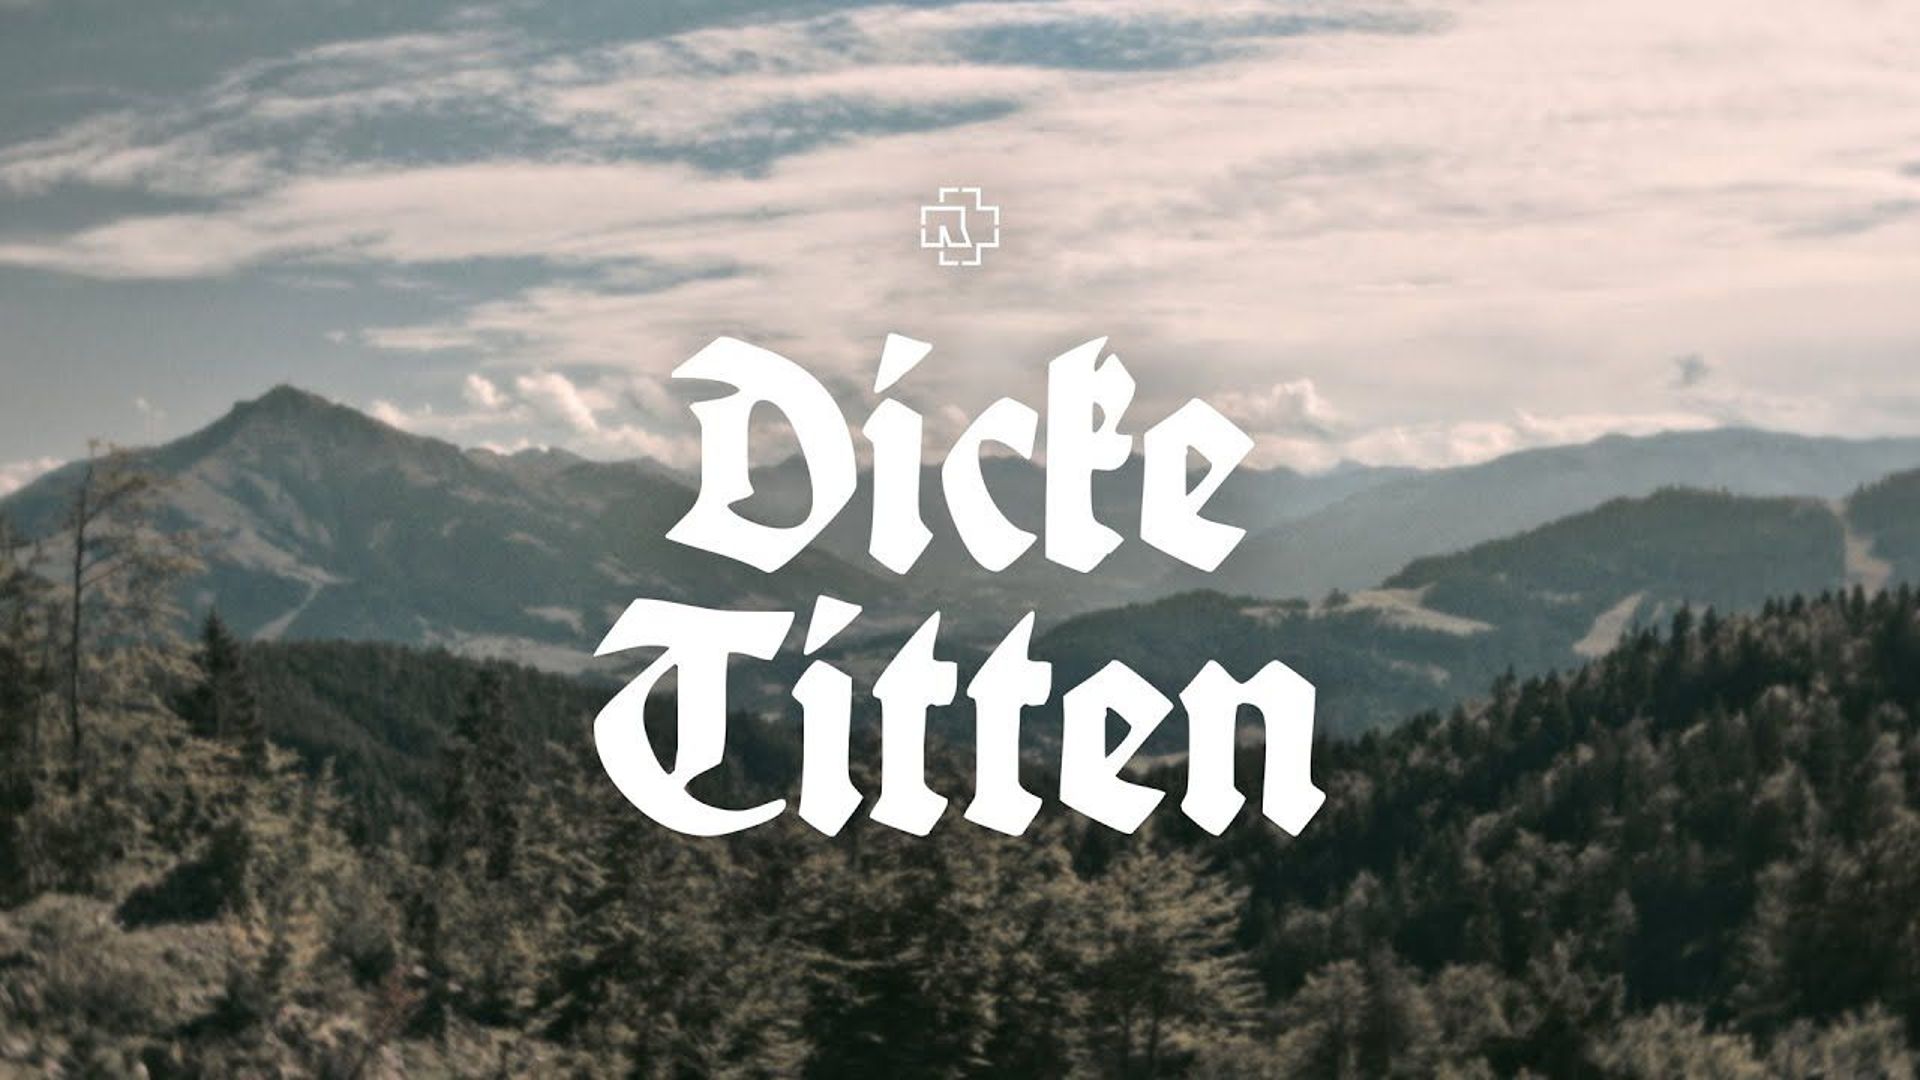 Rammstein - dicke titten lyrics english